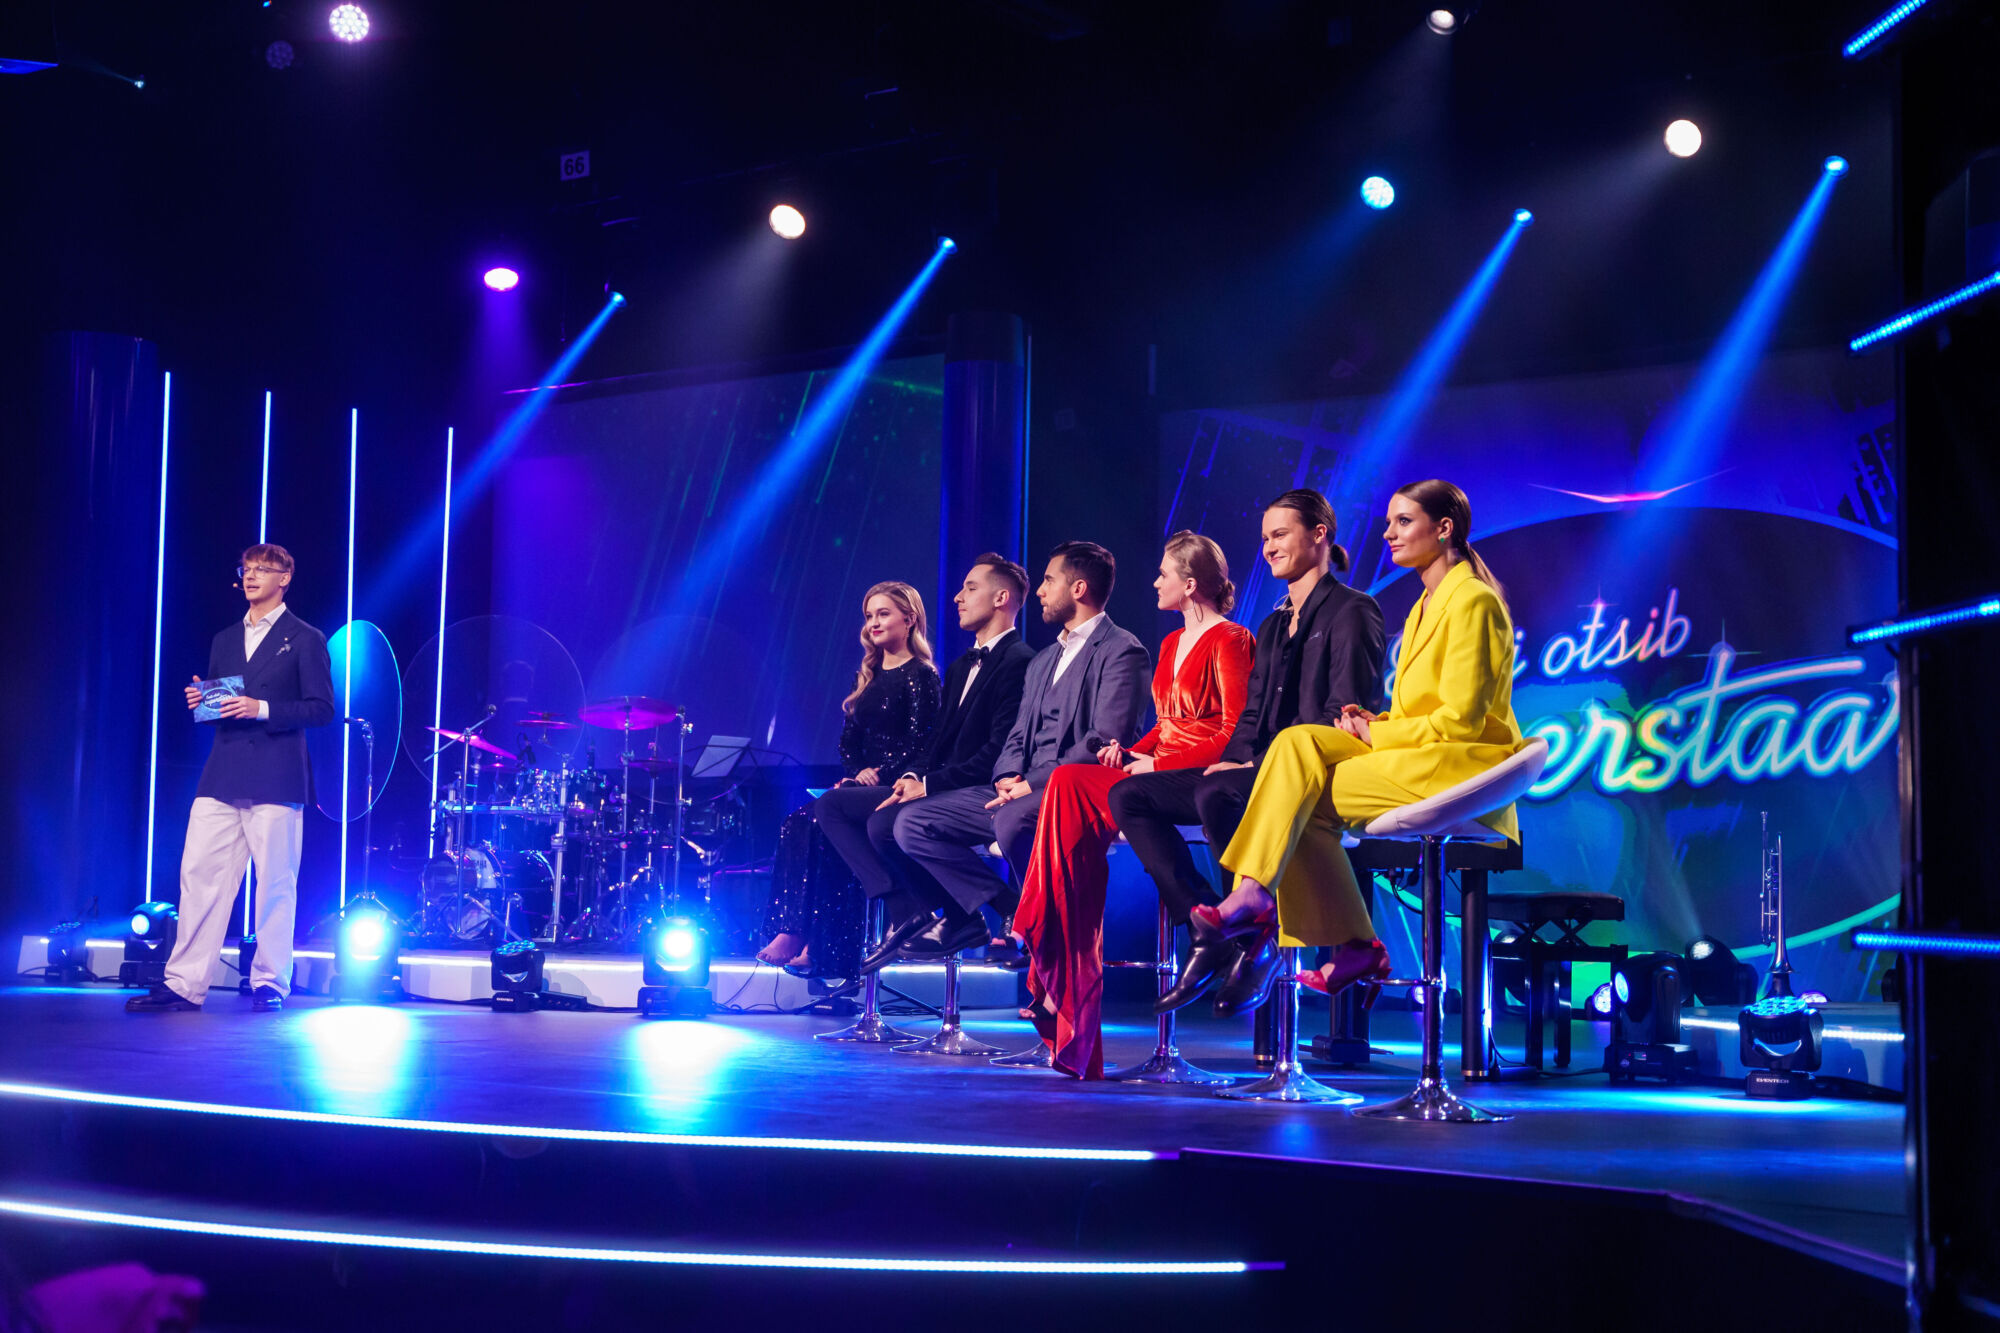 Participanții la emisiunea vedetă trebuie de fapt să interpreteze două melodii – TV3